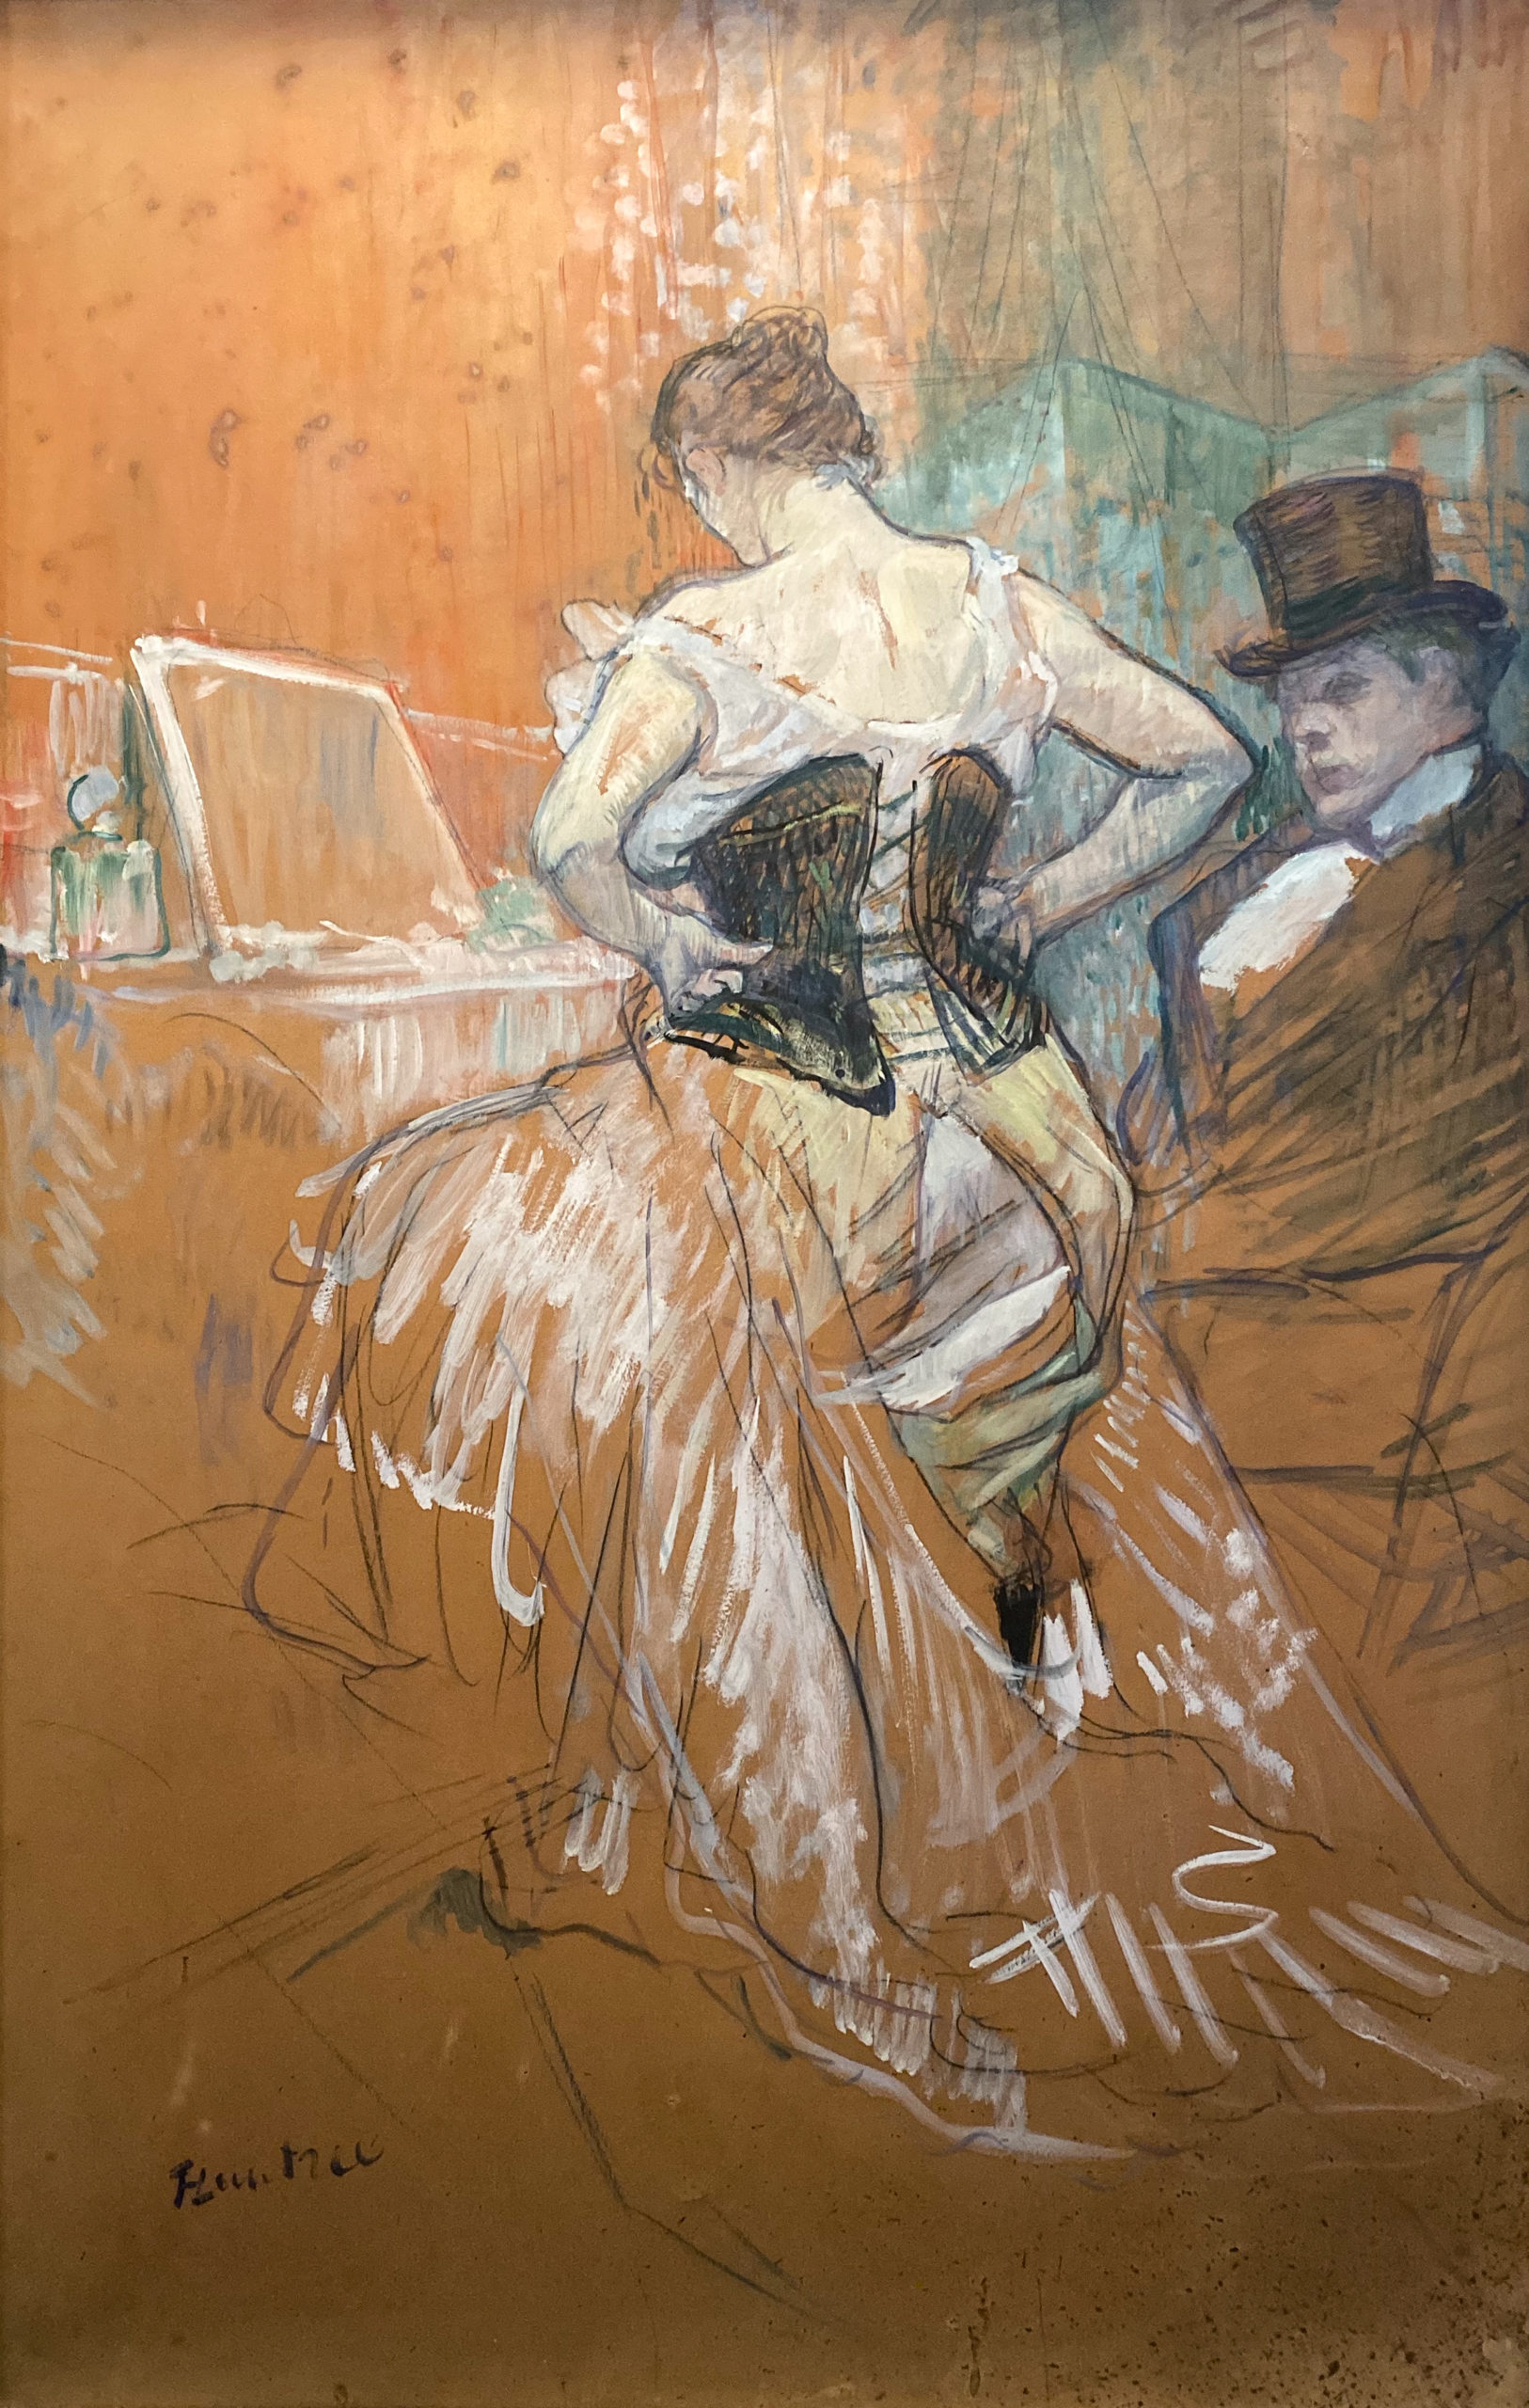 Toulouse-Lautrec im Grand Palais 2019/20 Conquête de passage